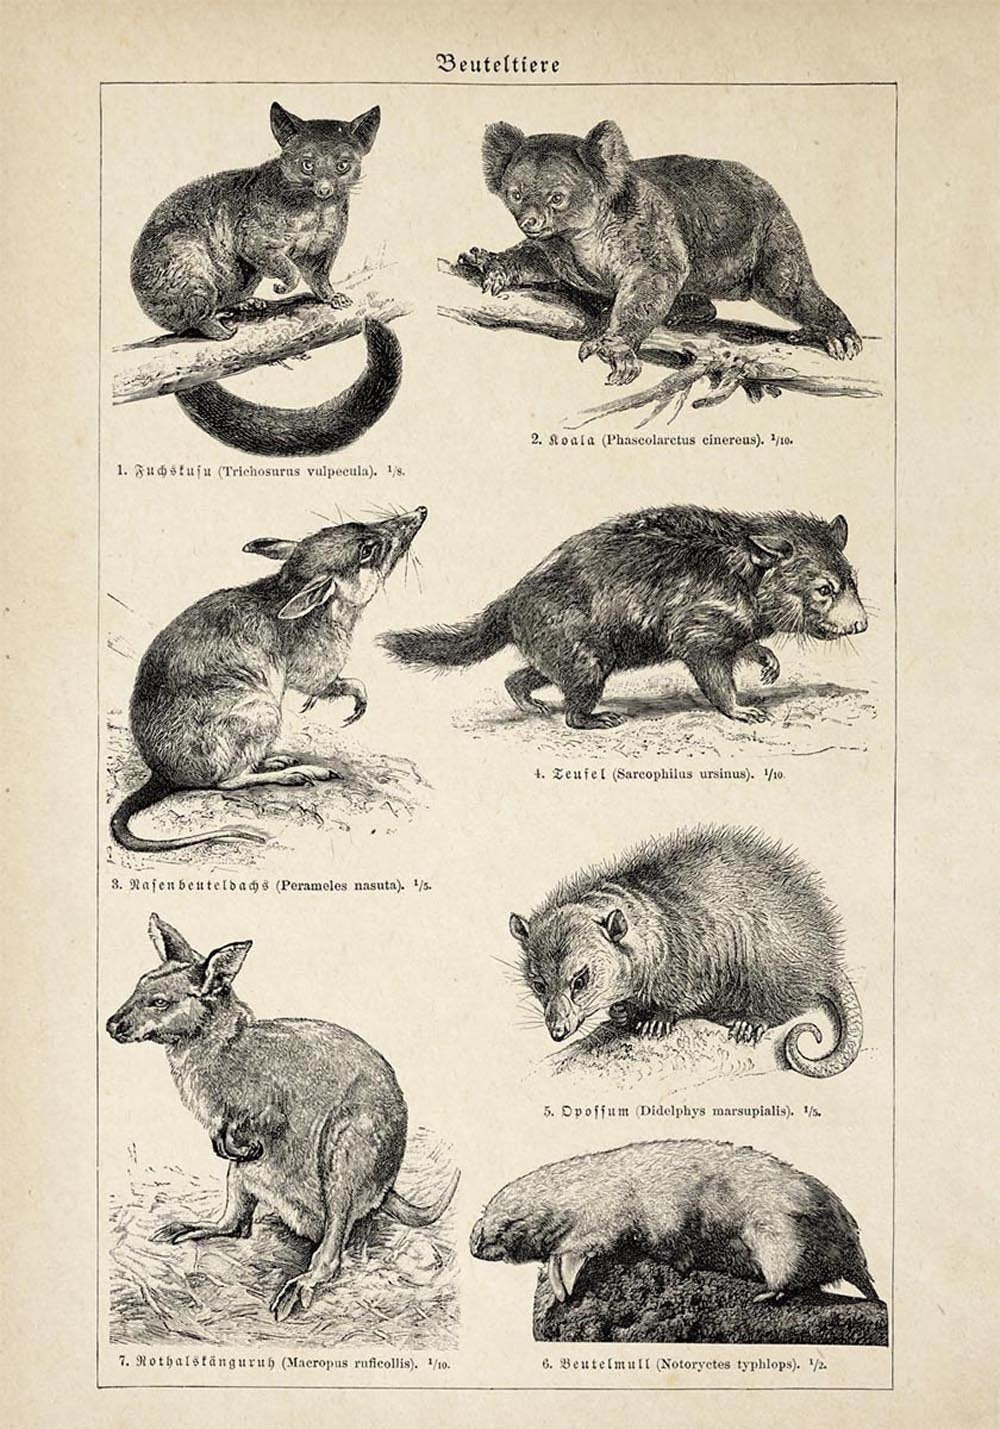 Antique Marsupial Collage Poster